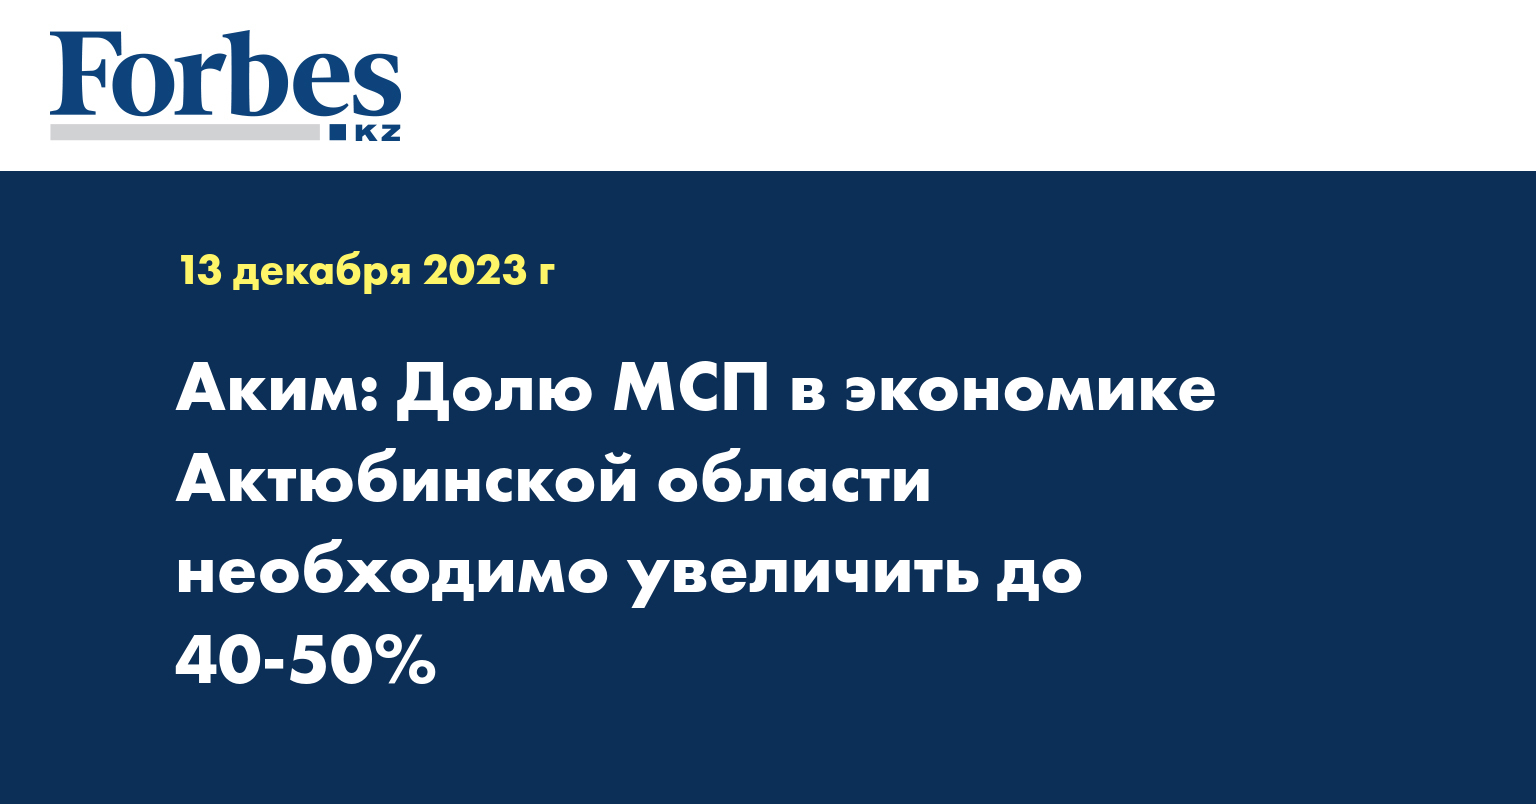 Аким: Долю МСП в экономике Актюбинской области необходимо увеличить до 40-50%